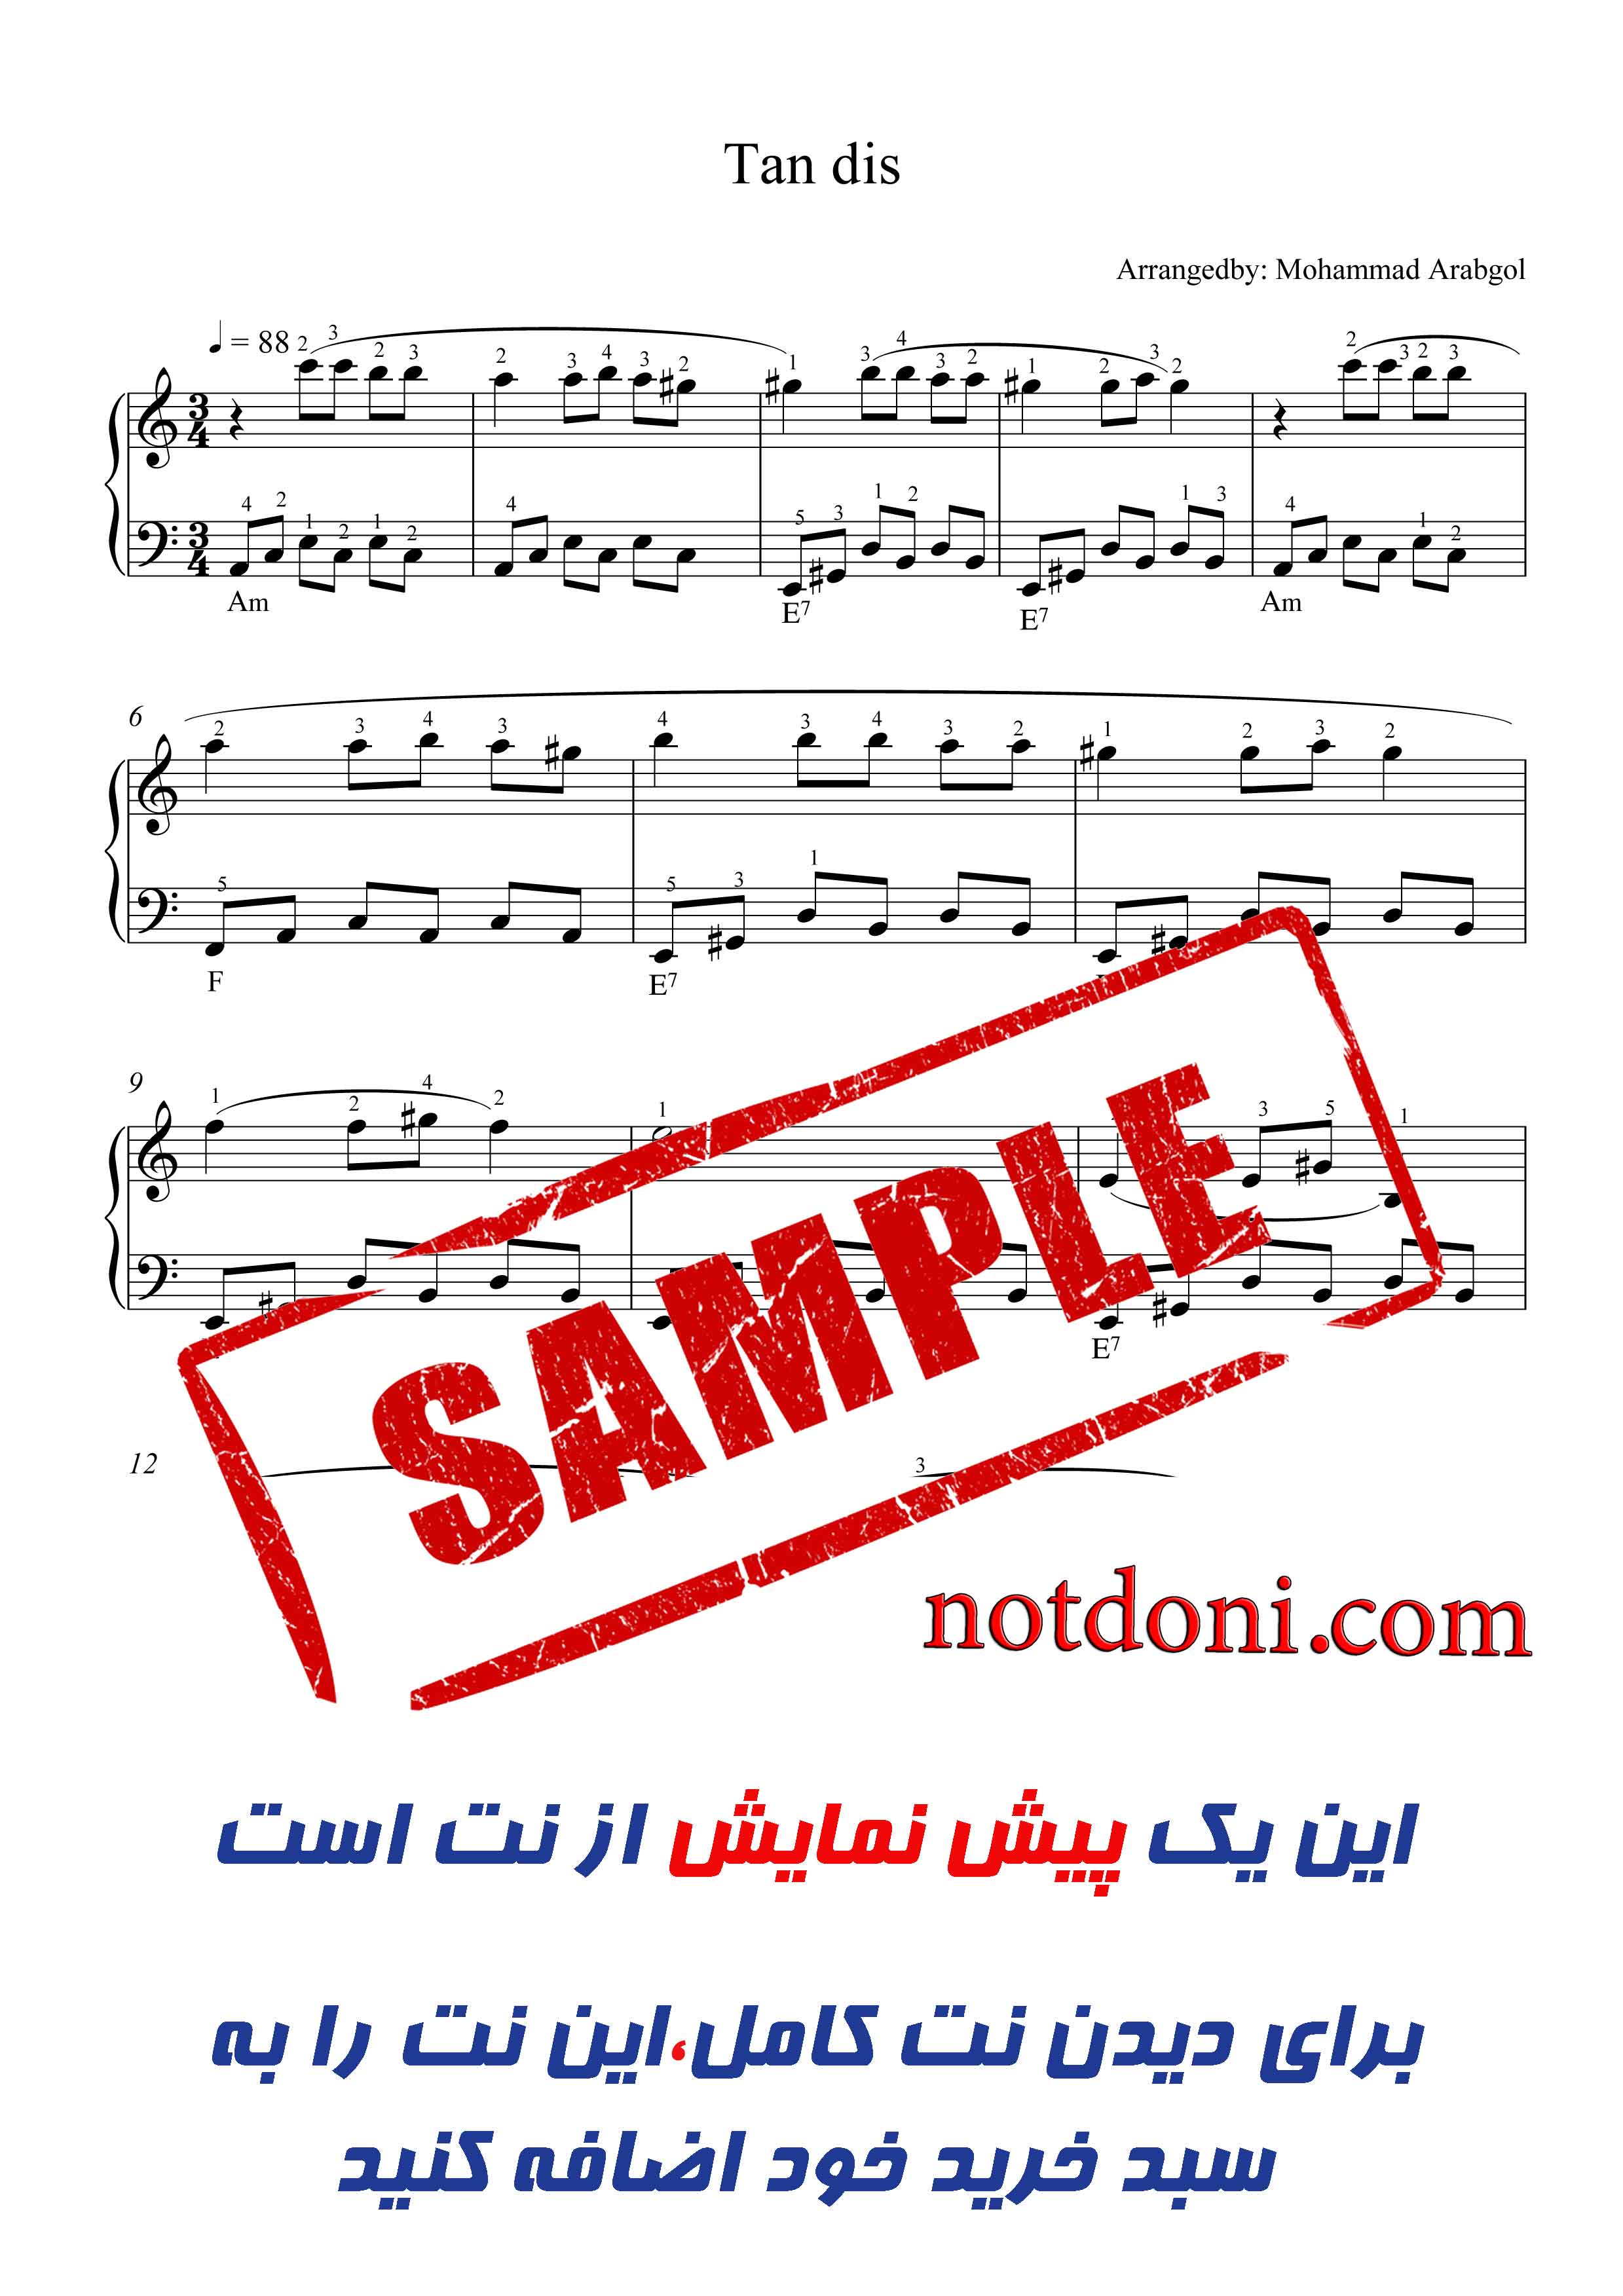 نت آهنگ تندیس از ابی برای پیانو با تنظیم محمد عربگل